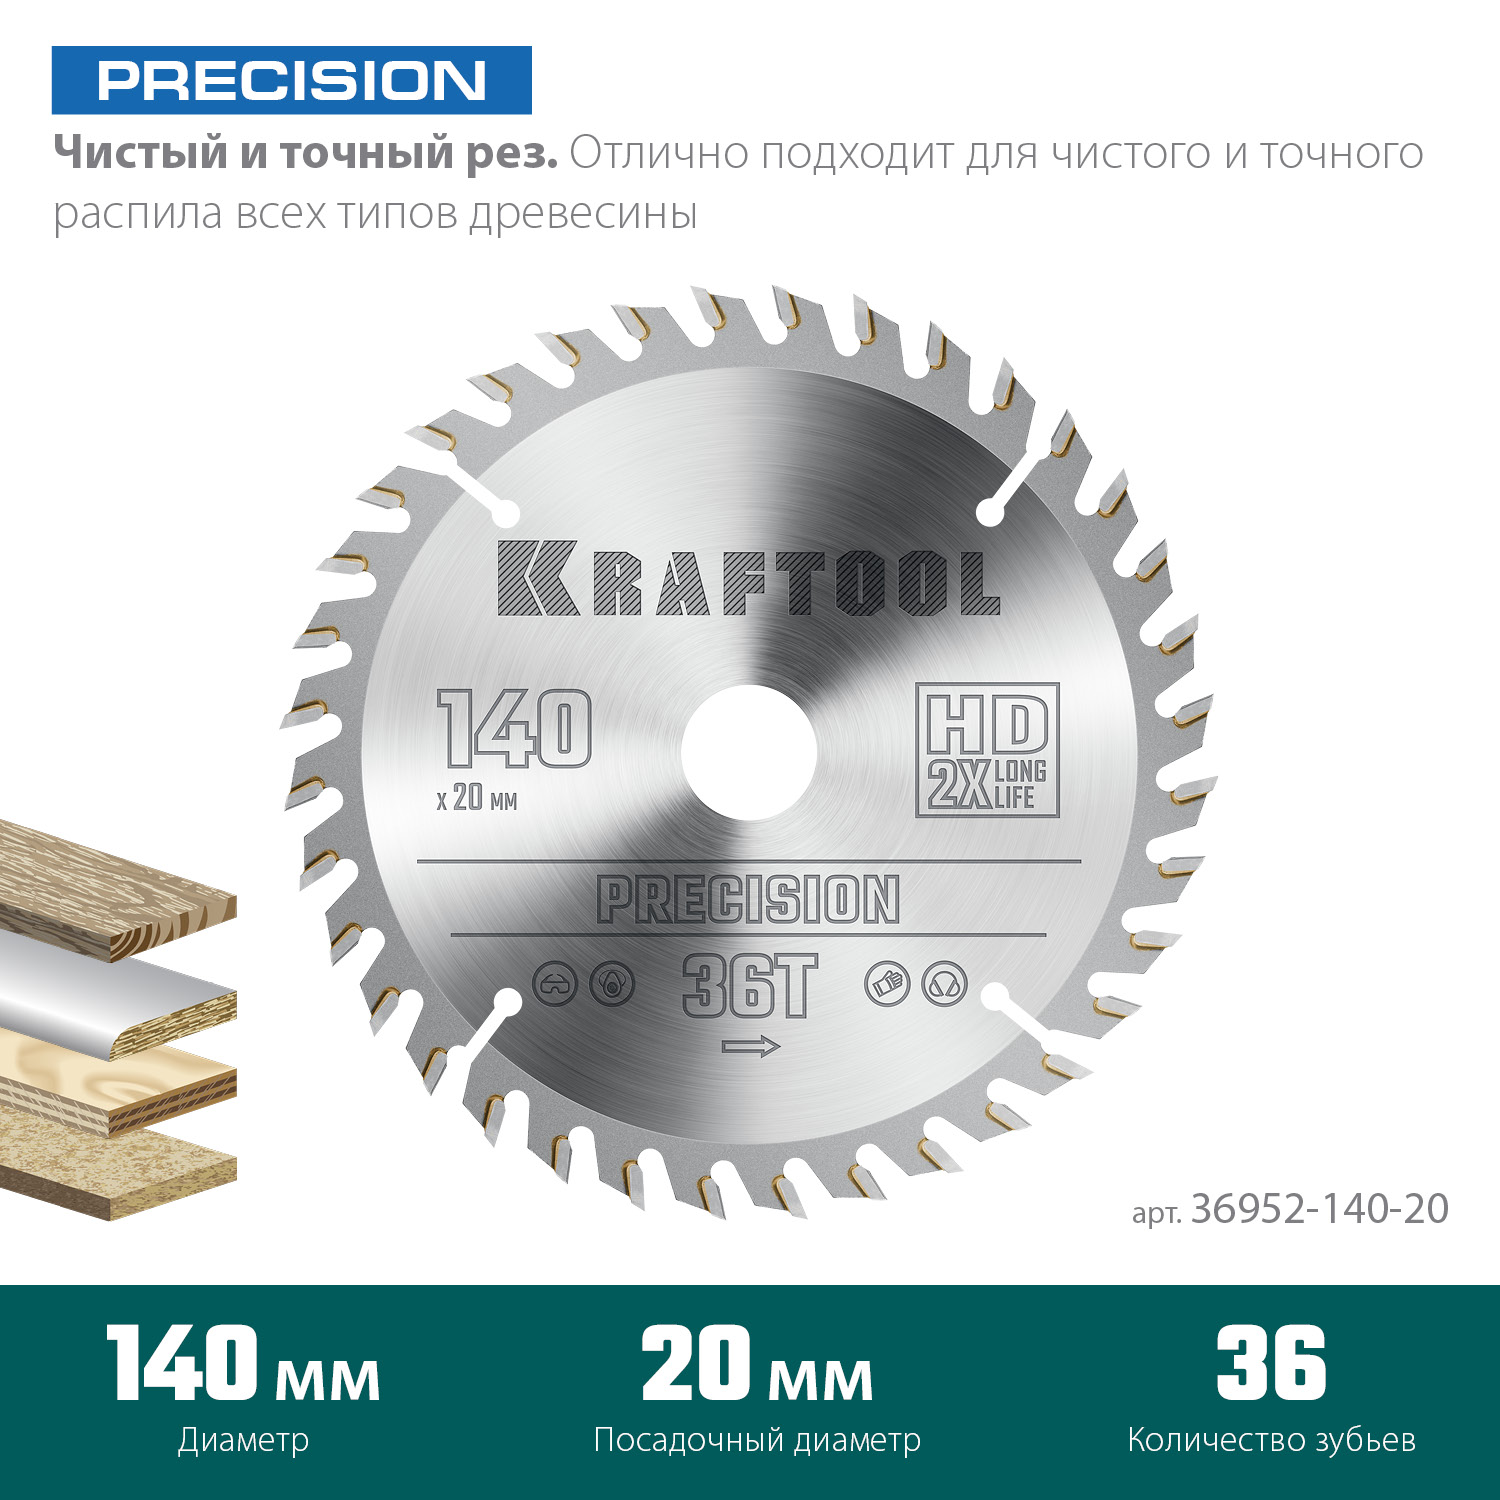 KRAFTOOL Precision, 140 х 20 мм, 36Т, пильный диск по дереву (36952-140-20)